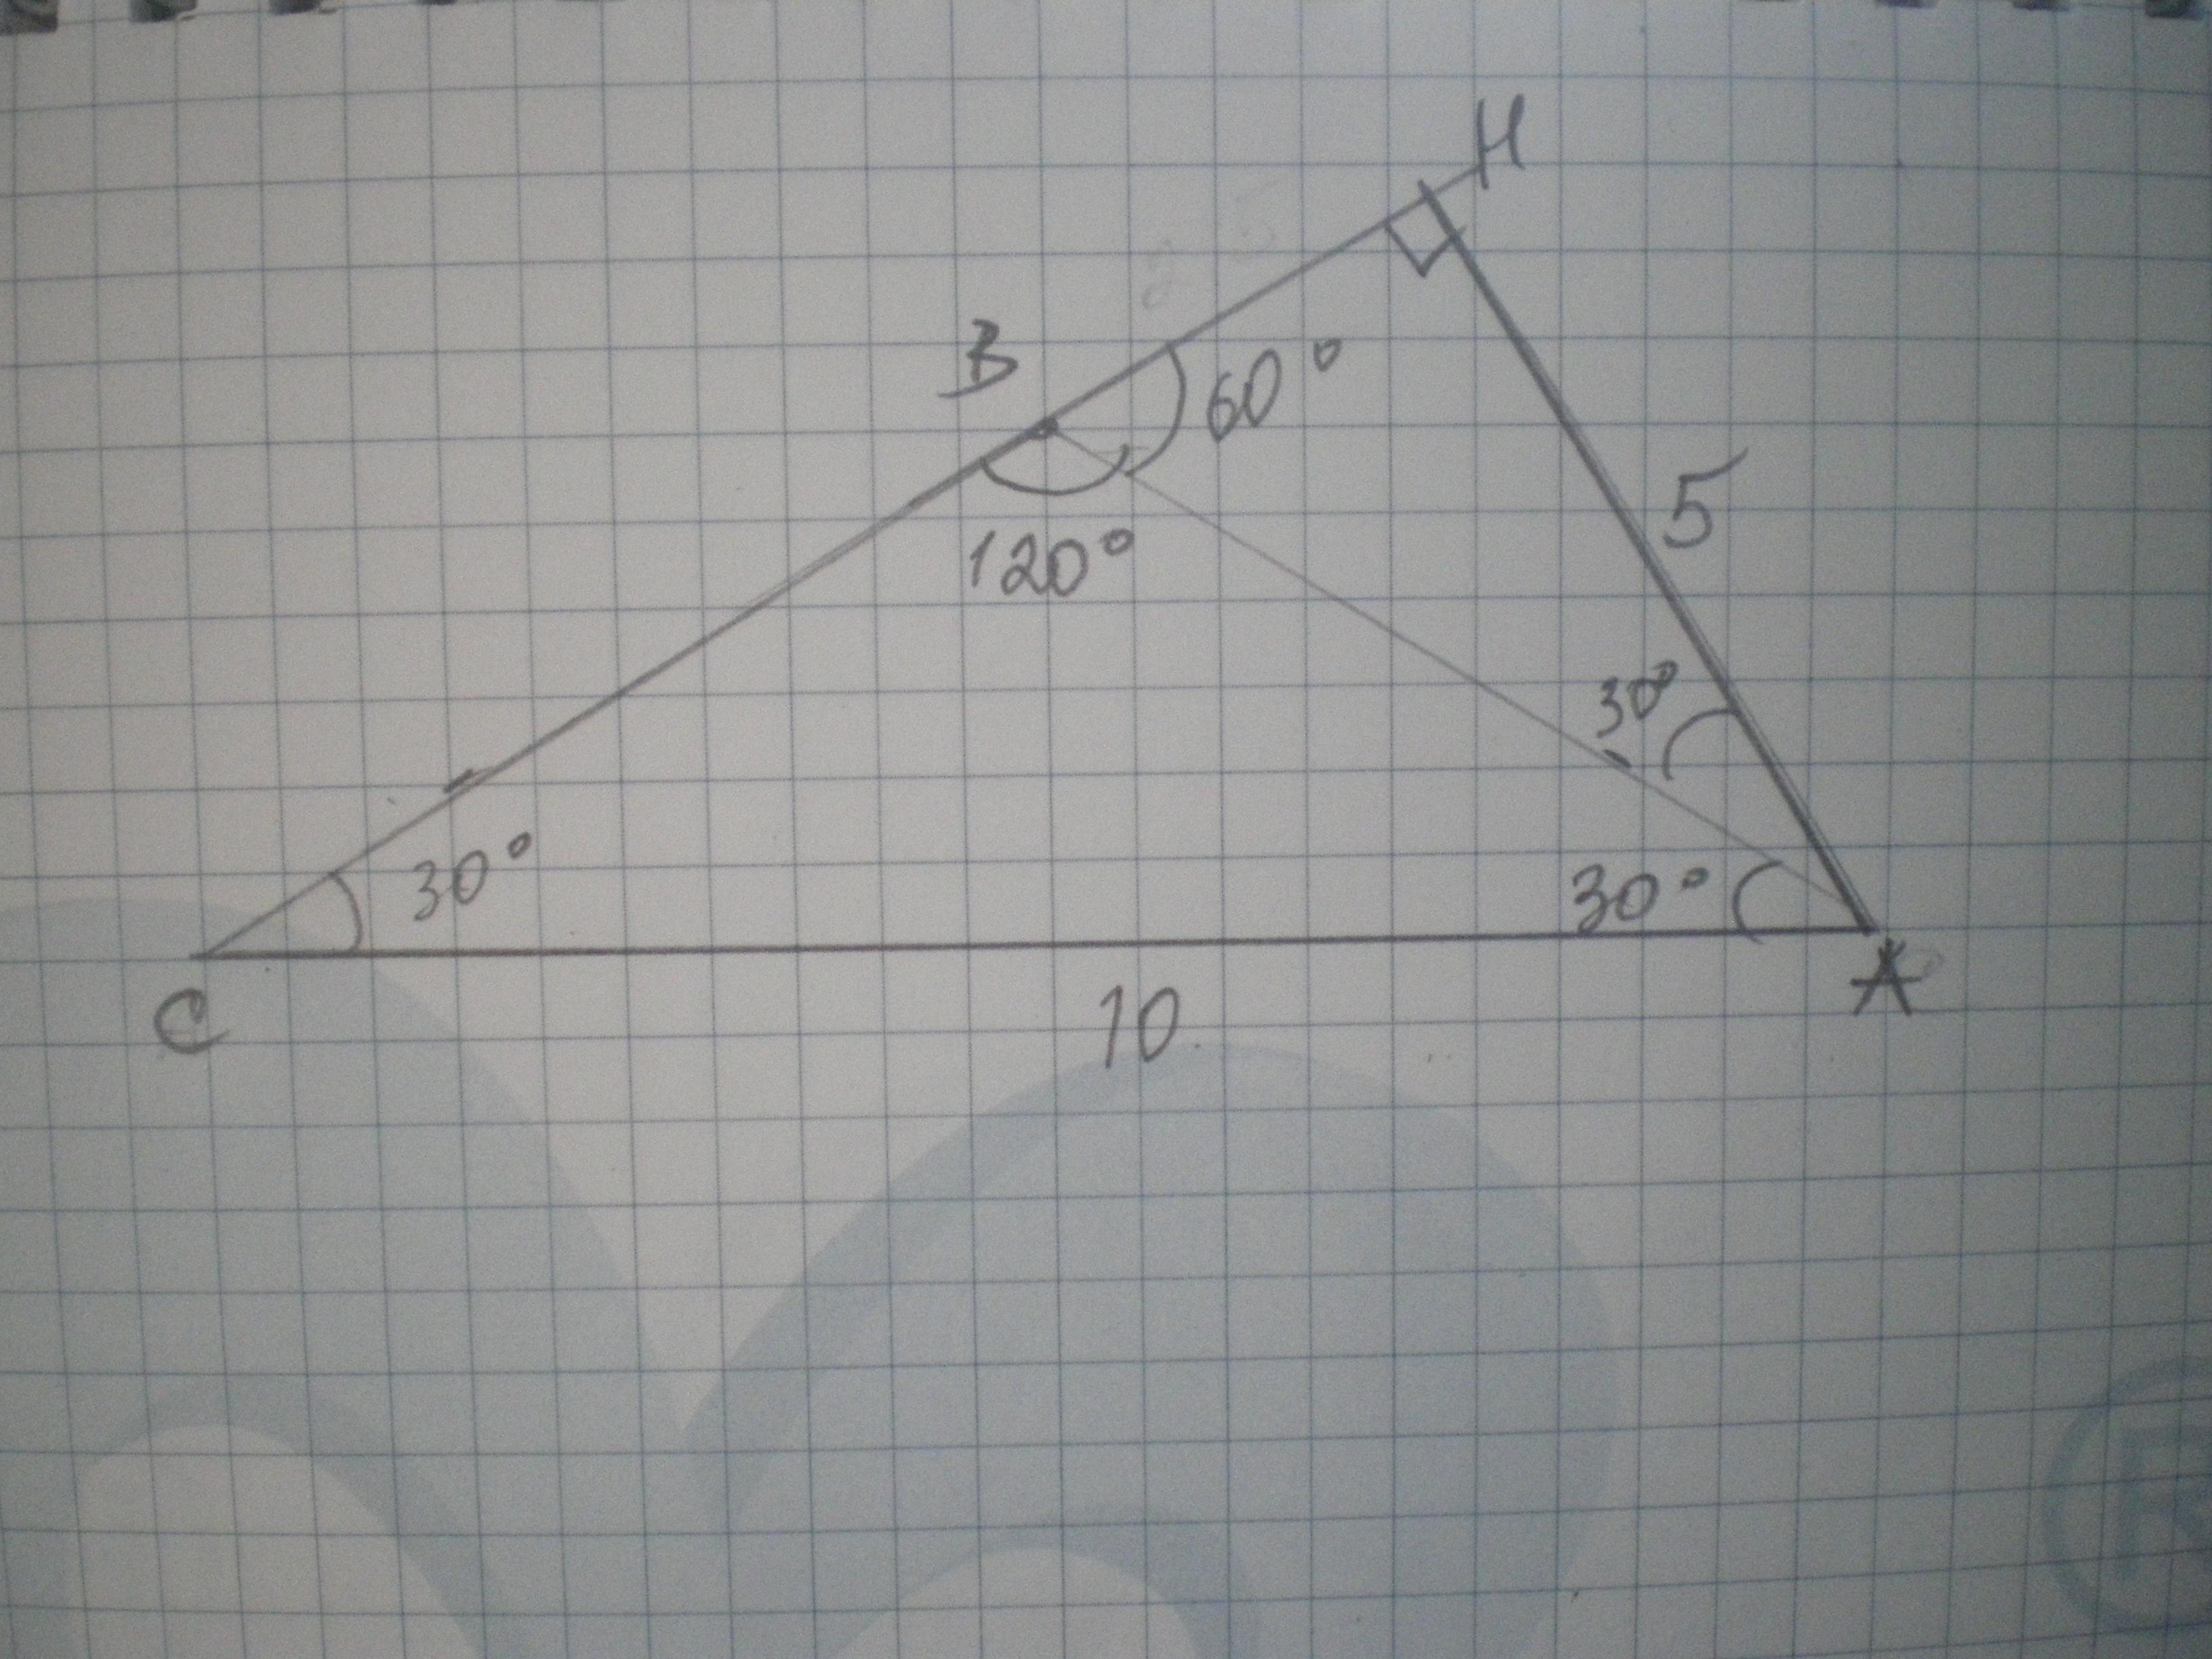 Равнобедренный тупоугольный треугольник авс. Равнобедренный треугольник с углом 120 градусов. В треугольнике АВС угол с равен 120. В равнобедренном треугольнике АВС С основанием АС угол б равен 120. Основание треугольника с углом 120.